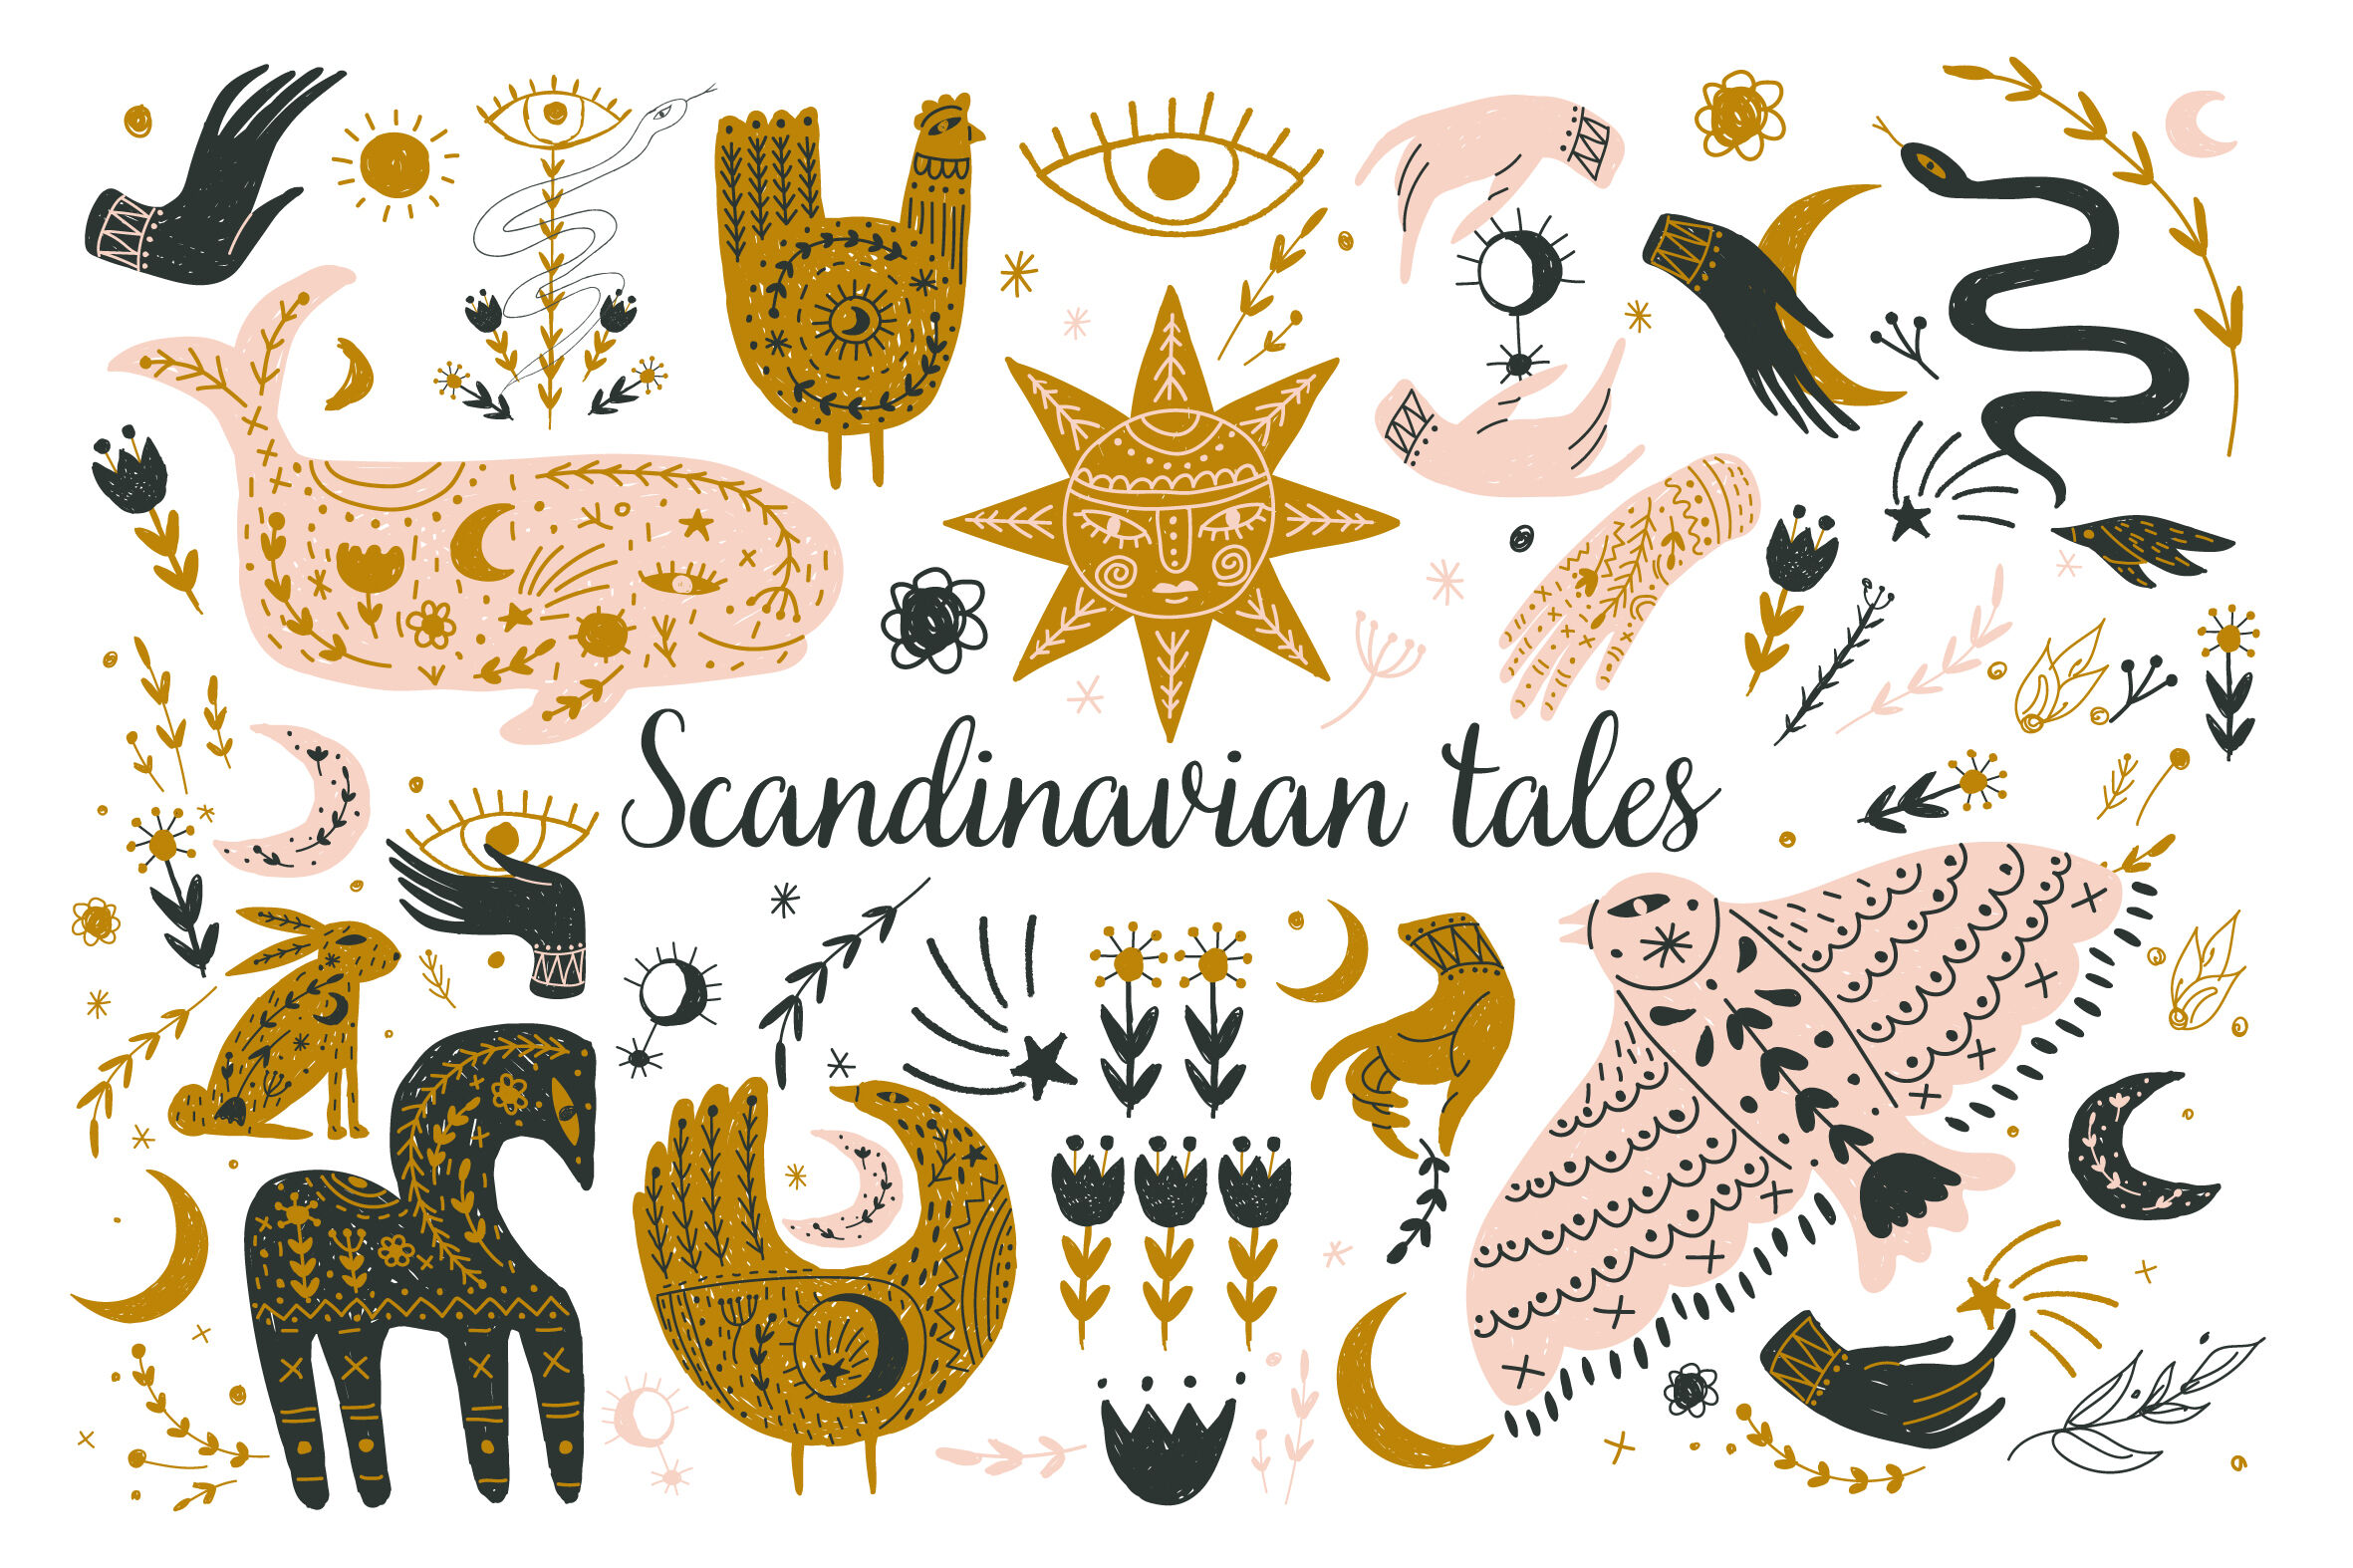 Scandinavian Folk Art